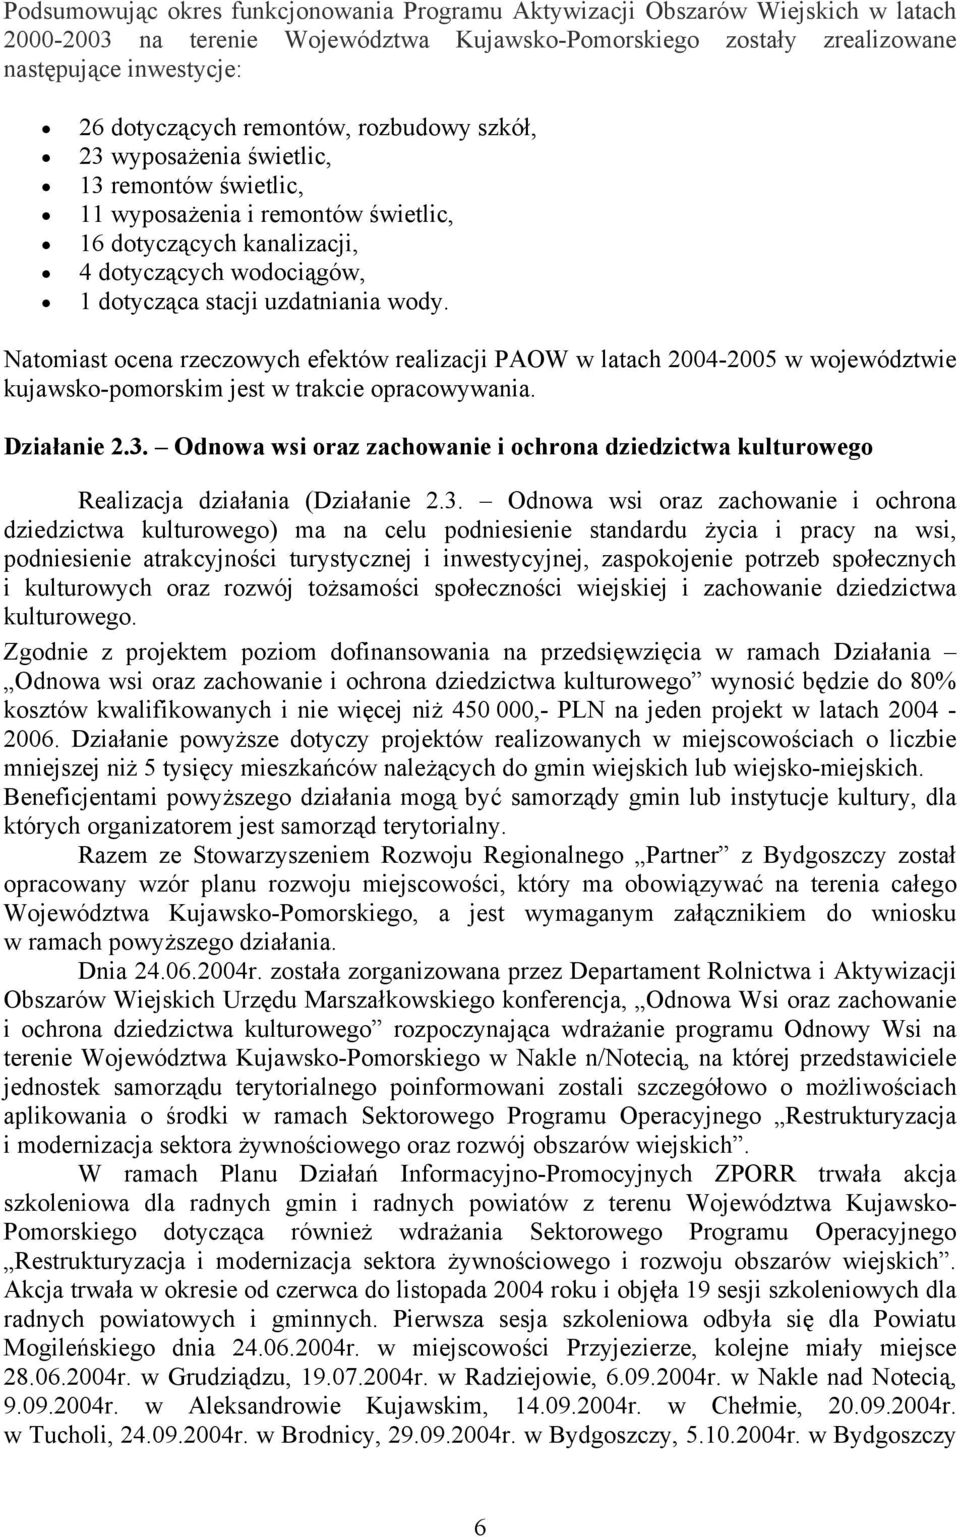 Natomiast ocena rzeczowych efektów realizacji PAOW w latach 2004-2005 w województwie kujawsko-pomorskim jest w trakcie opracowywania. Działanie 2.3.